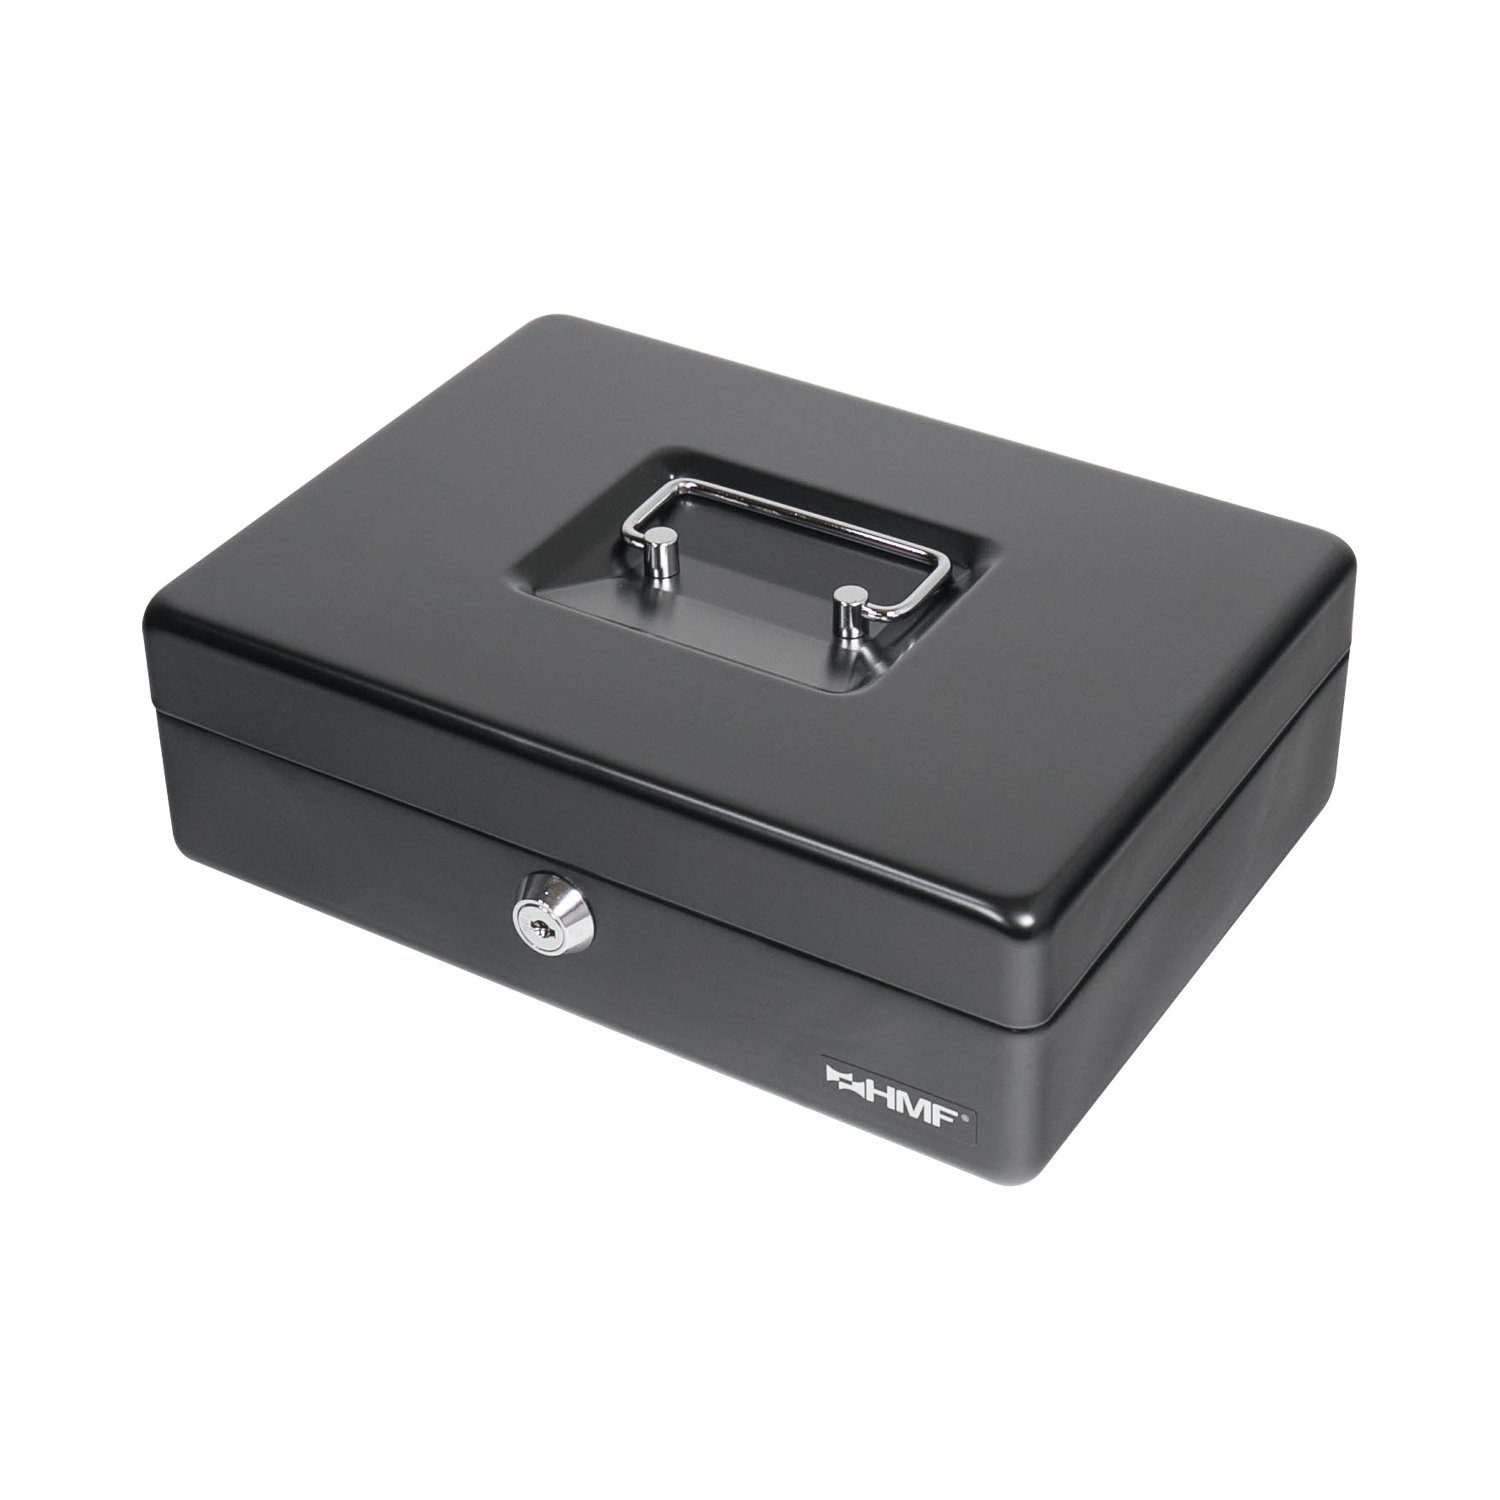 HMF Geldkassette mit Münzzählbrett, Bargeldkasse mit Geldbox schwarz cm Schlüssel, Abschließbare hochwertige 25x18x9